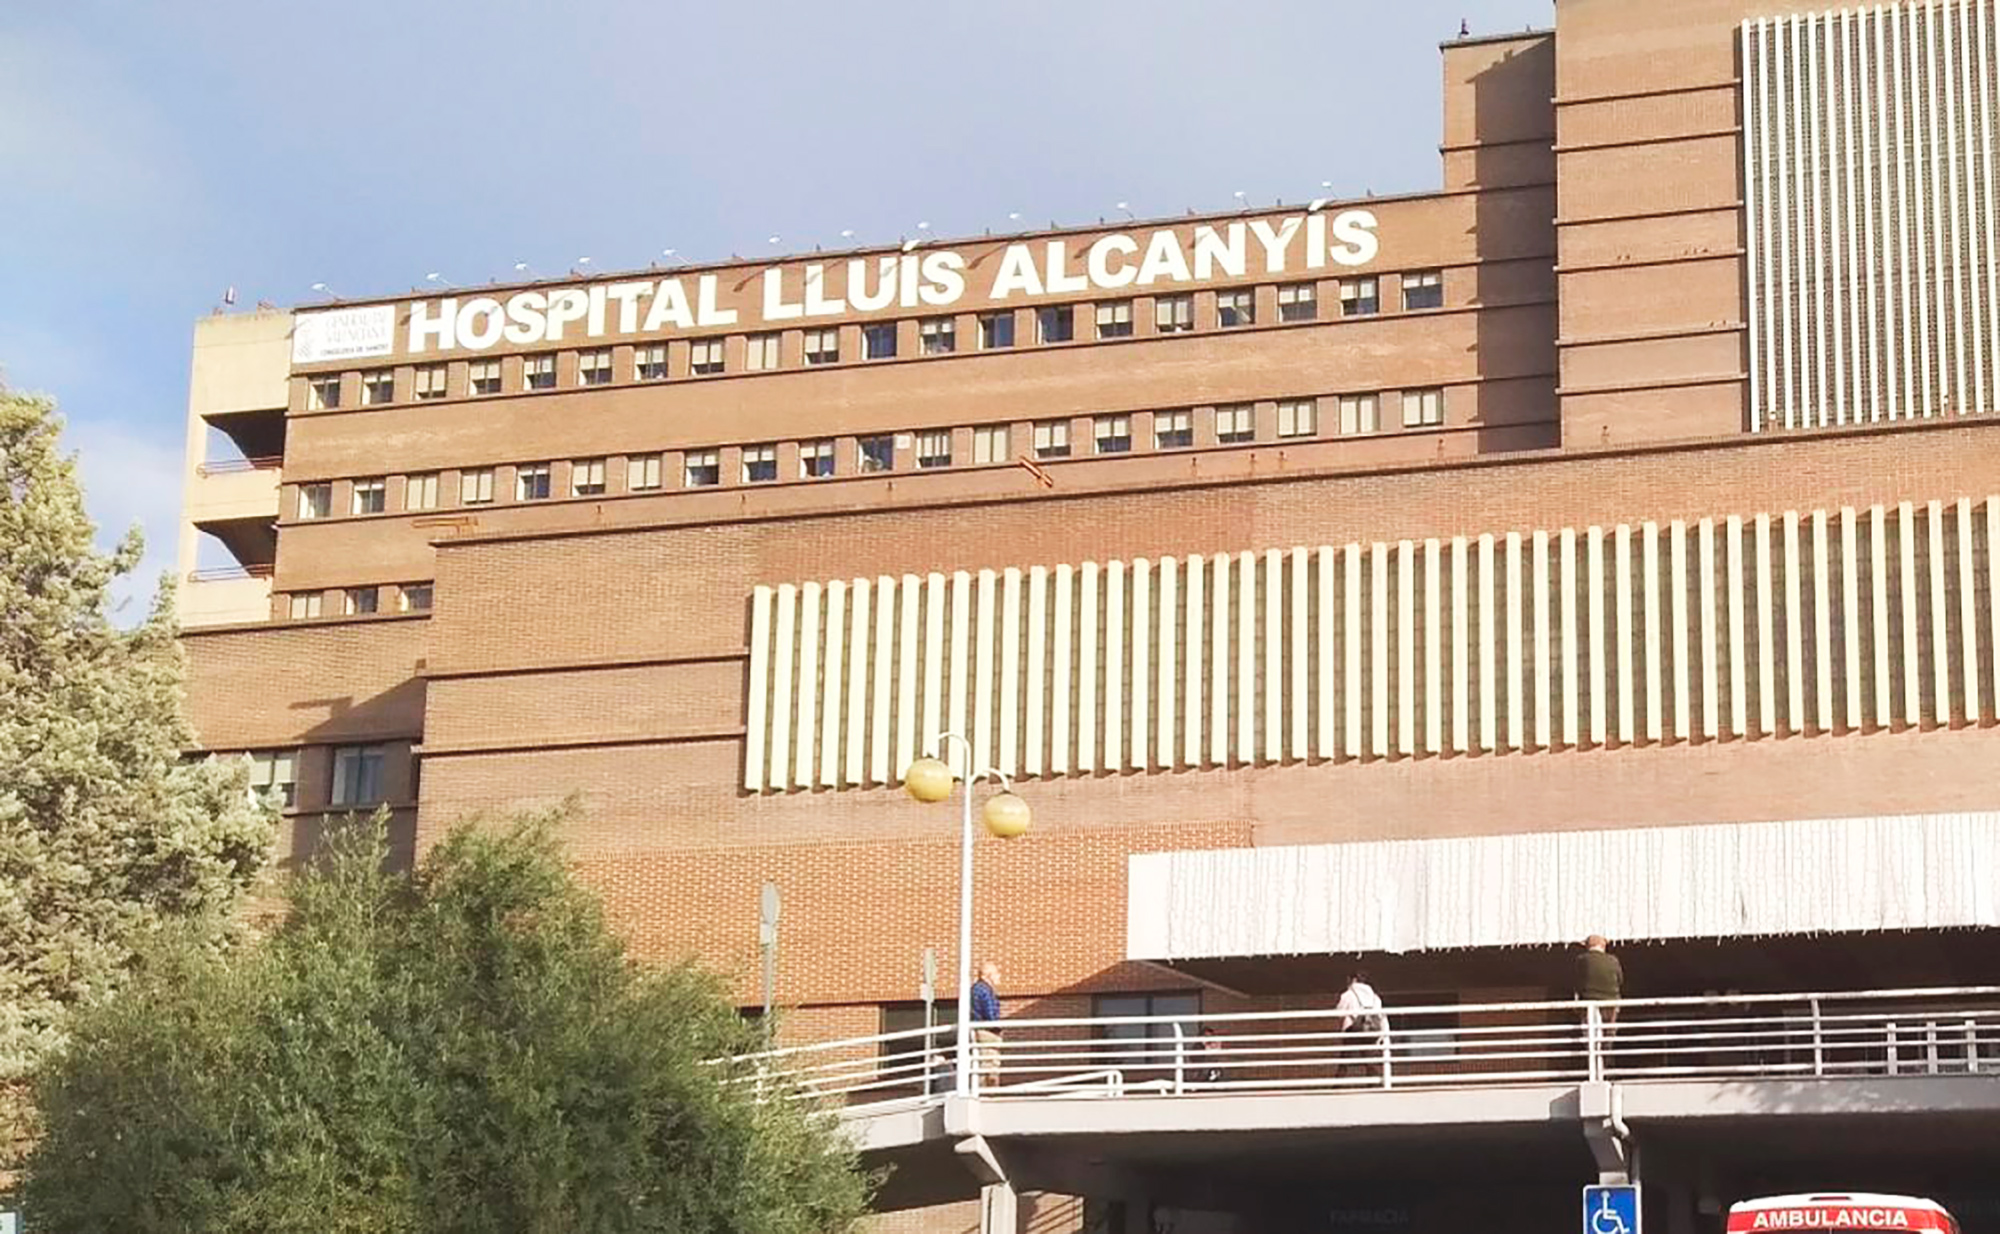 Hospital de día y Oncología Hospital Lluís Alcanyís Day Hospital and Oncology Hospital Lluís Alcanyís